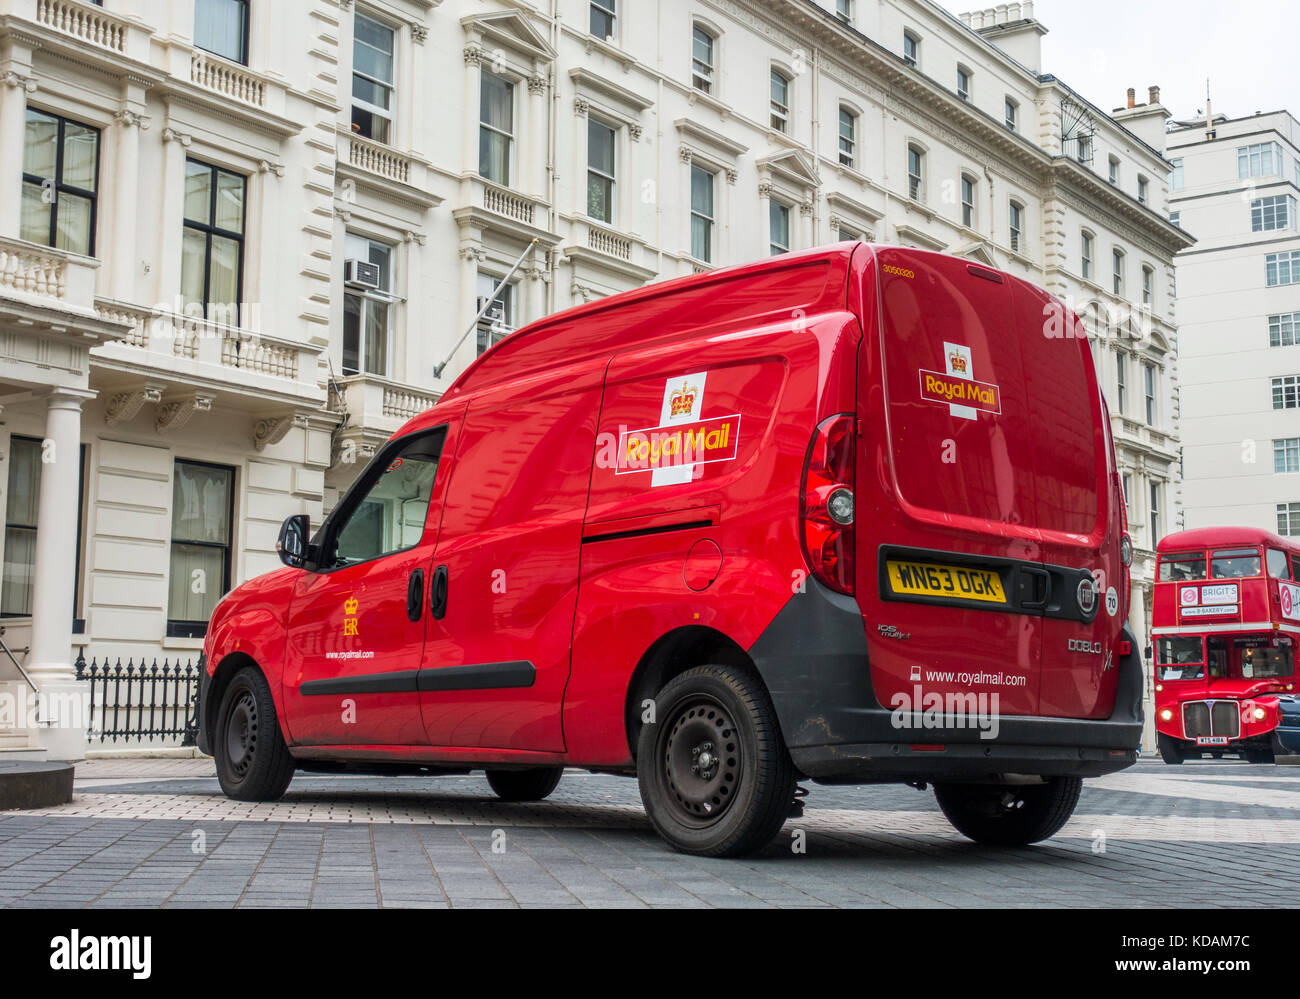 Royal Mail van in einer Straße geparkt, außerhalb der Gebäude, in South Kensington, mit einem traditionellen roten Bus nähern. London SW7, England, UK. Stockfoto